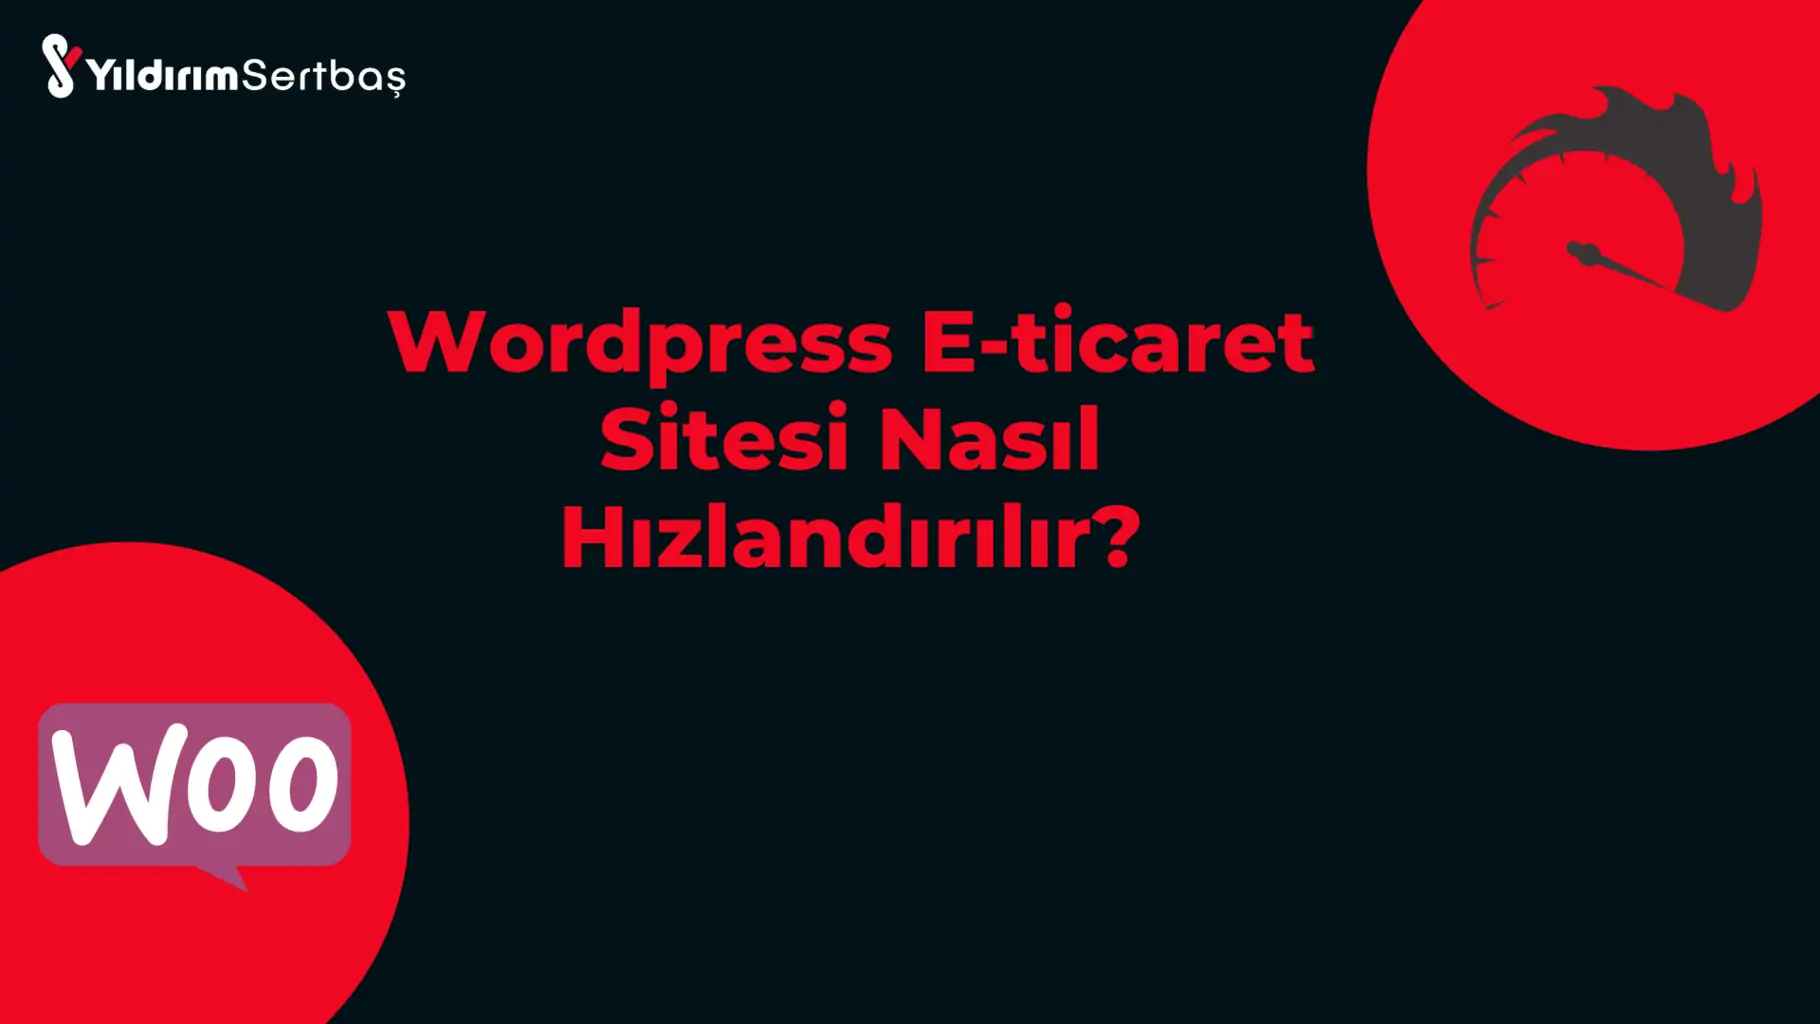 Wordpress E-ticaret Sitesi Nasıl Hızlandırılır